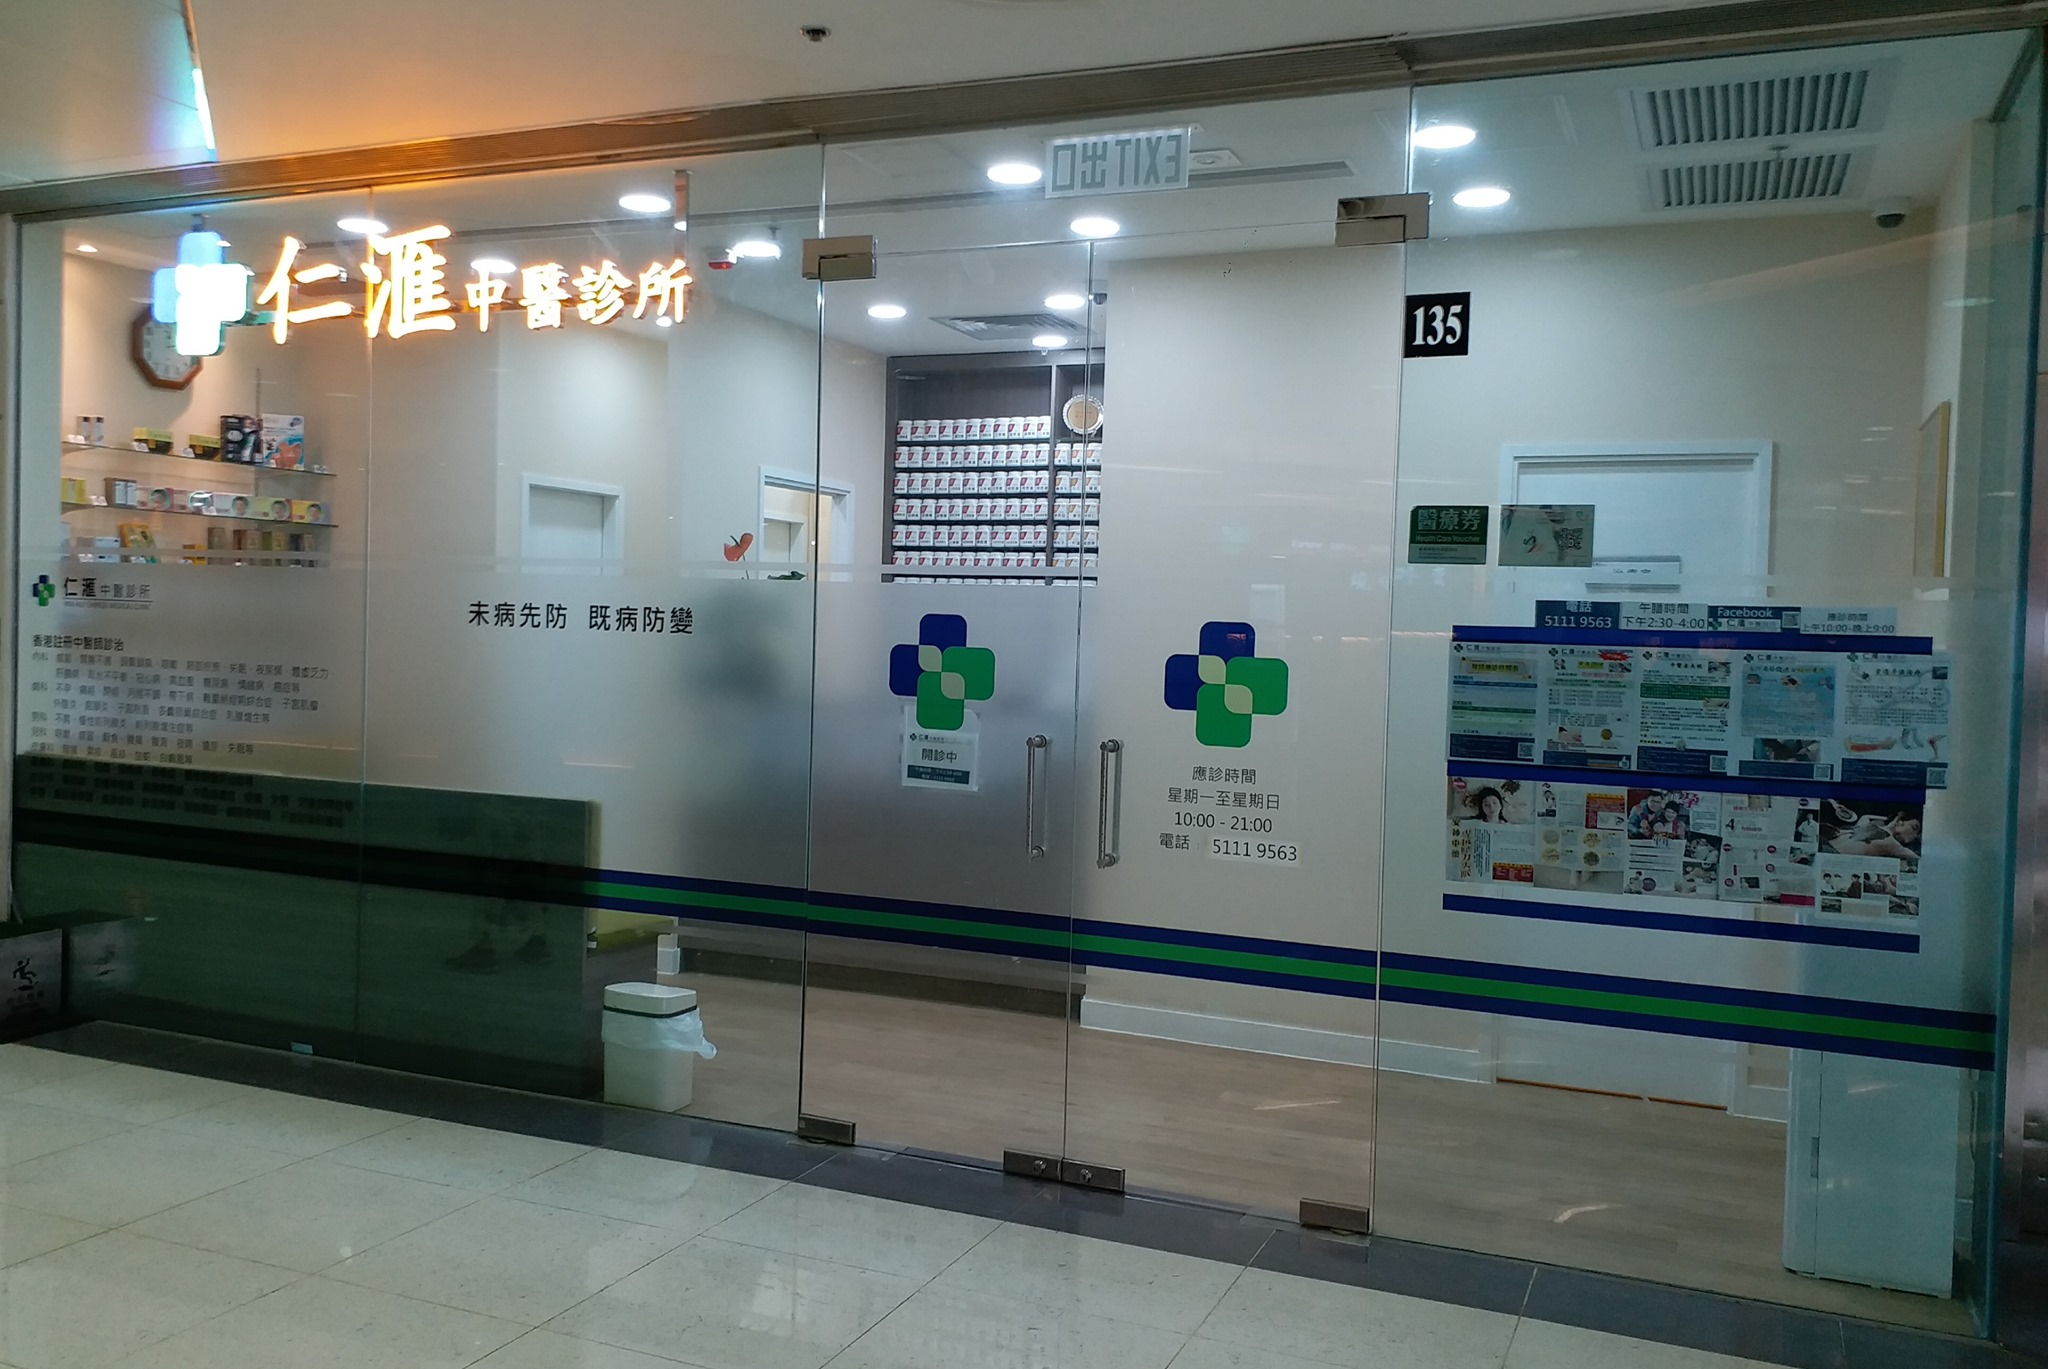 中醫診所 Chinese medicine clinic: 仁滙中醫診所